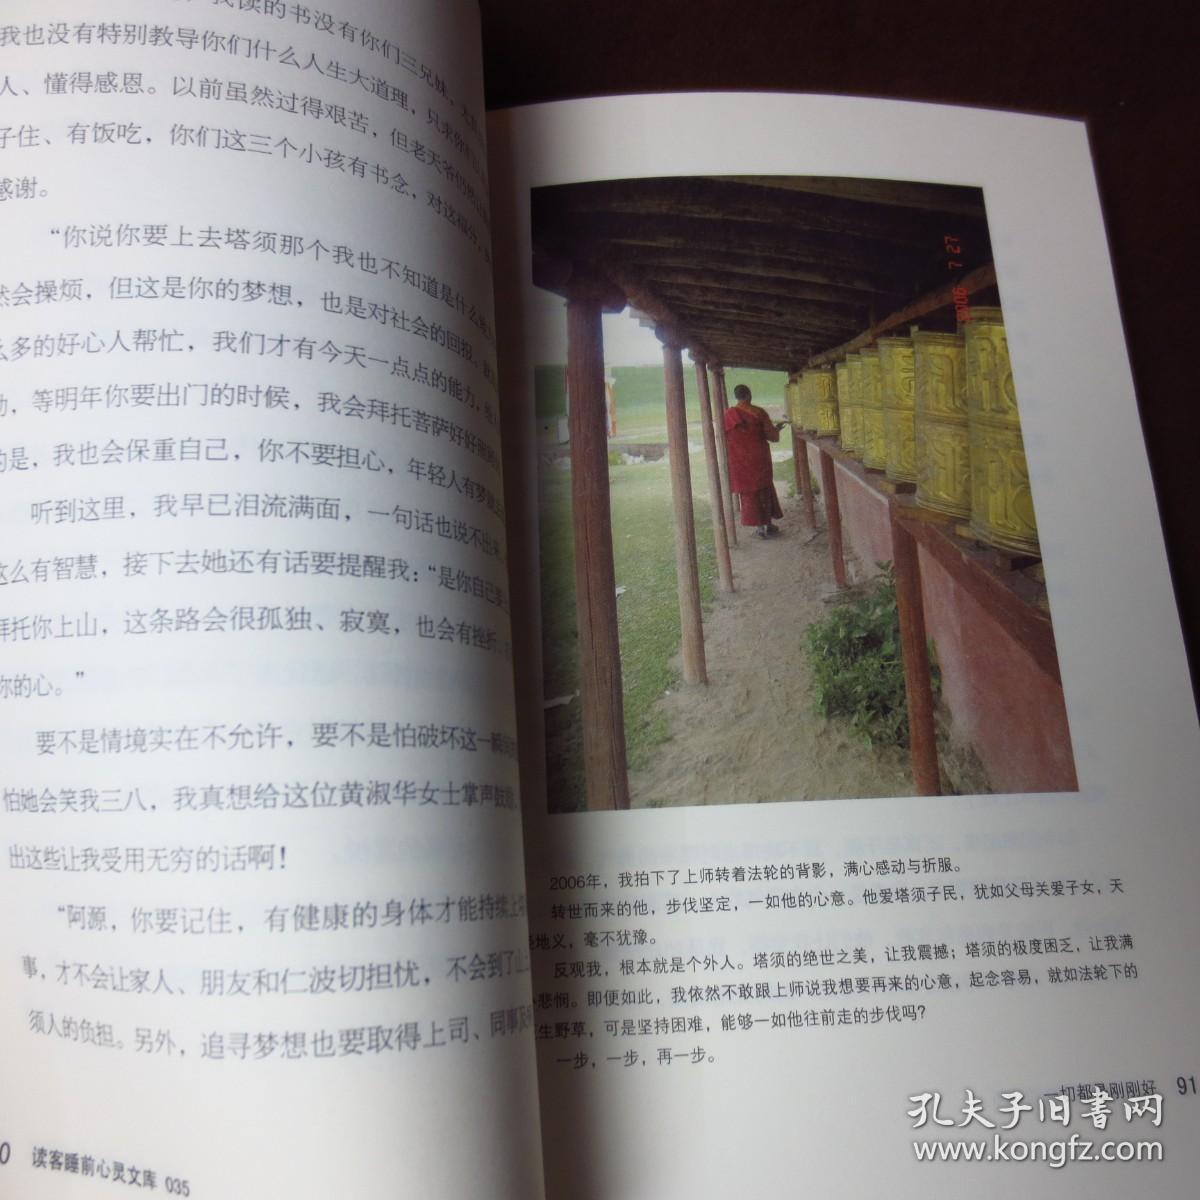 一切都刚刚好----台湾医生在西藏的真实故事